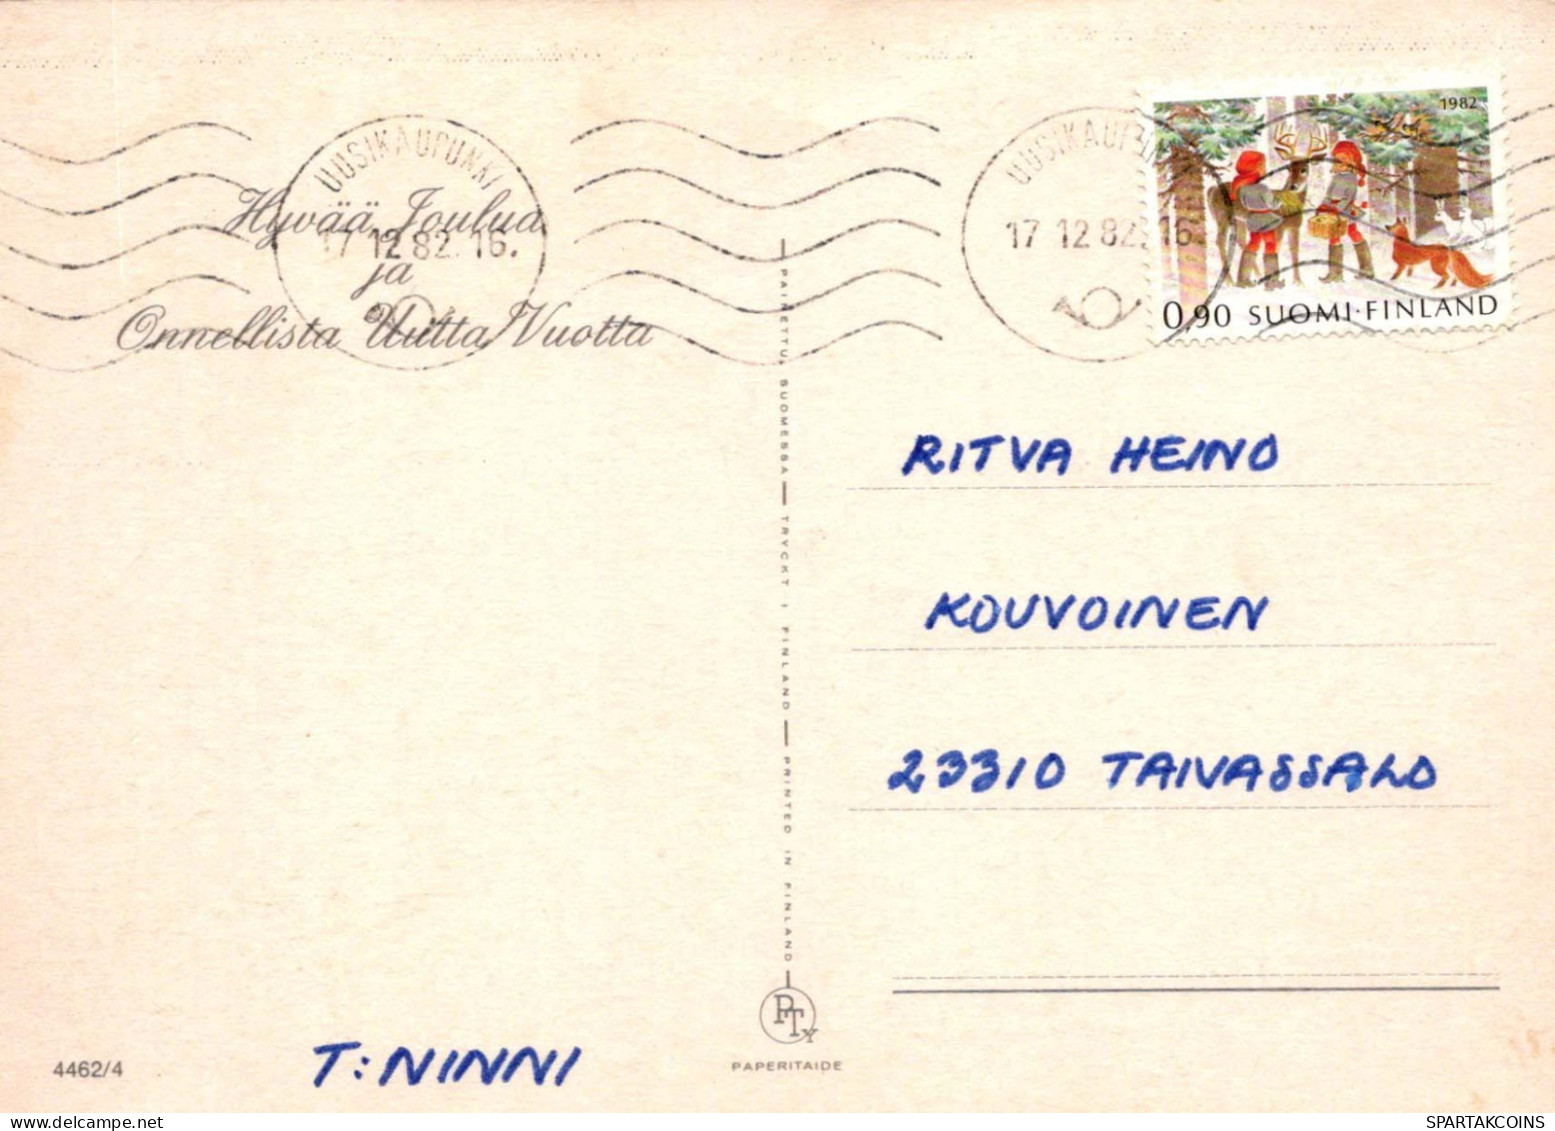 NIÑOS NIÑOS Escena S Paisajes Vintage Tarjeta Postal CPSM #PBU415.ES - Scenes & Landscapes